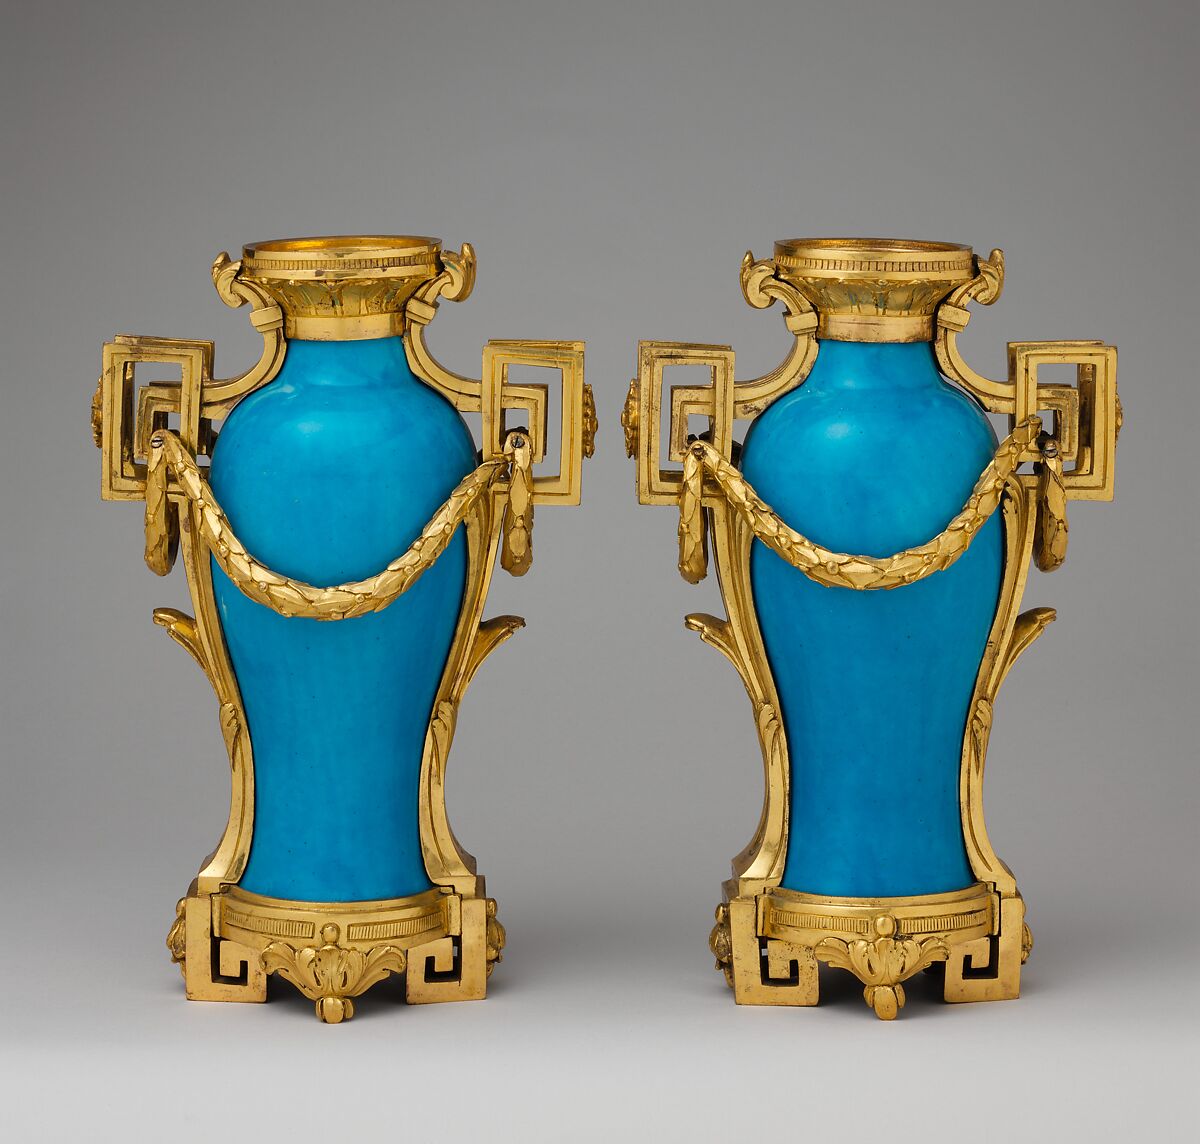 Vase (vase à monter) (one of a pair), Sèvres Manufactory (French, 1740–present), Soft-paste porcelain, gilt bronze mounts, French, Sèvres 